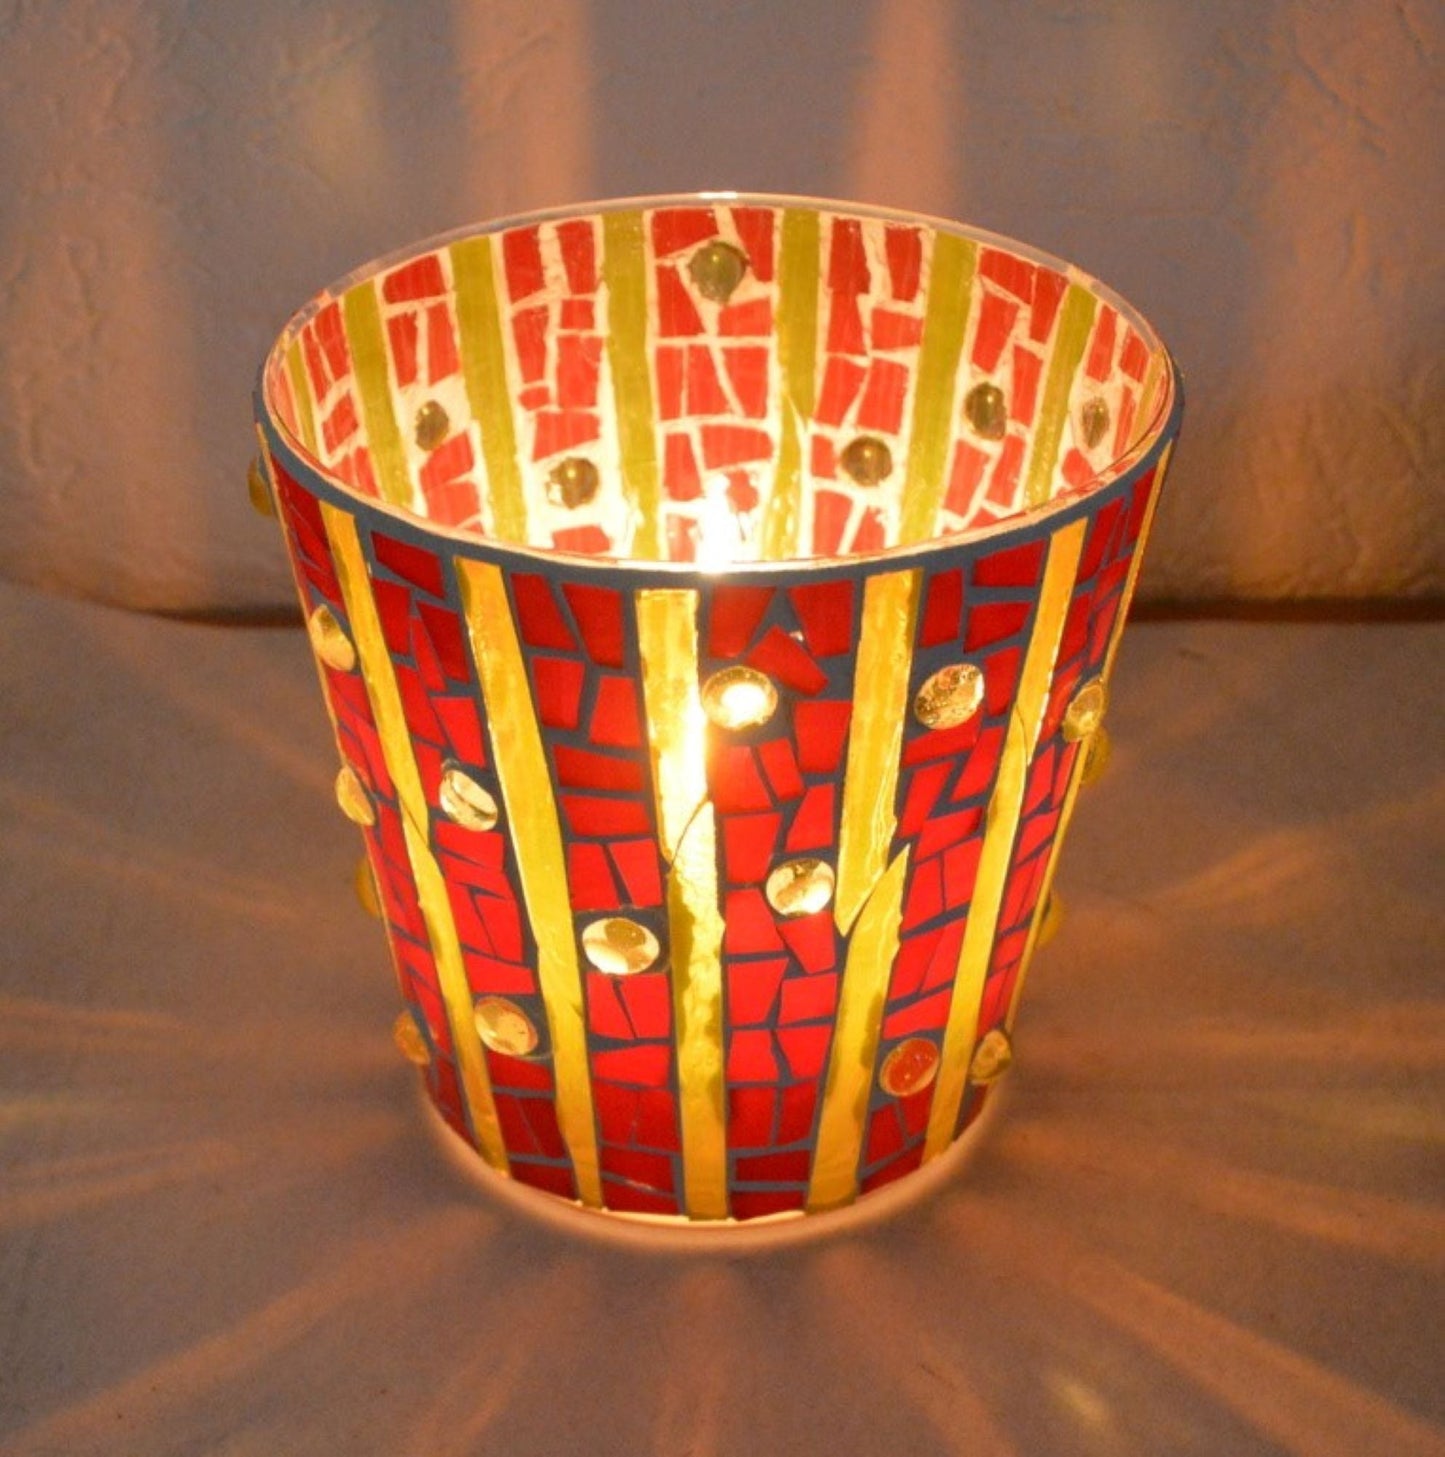 Mosaik Windlicht rot gelb - handgemacht versch. Größen Kerzenhalter Teelichthalter - Mosaikkasten aus alt mach neu dekoidee